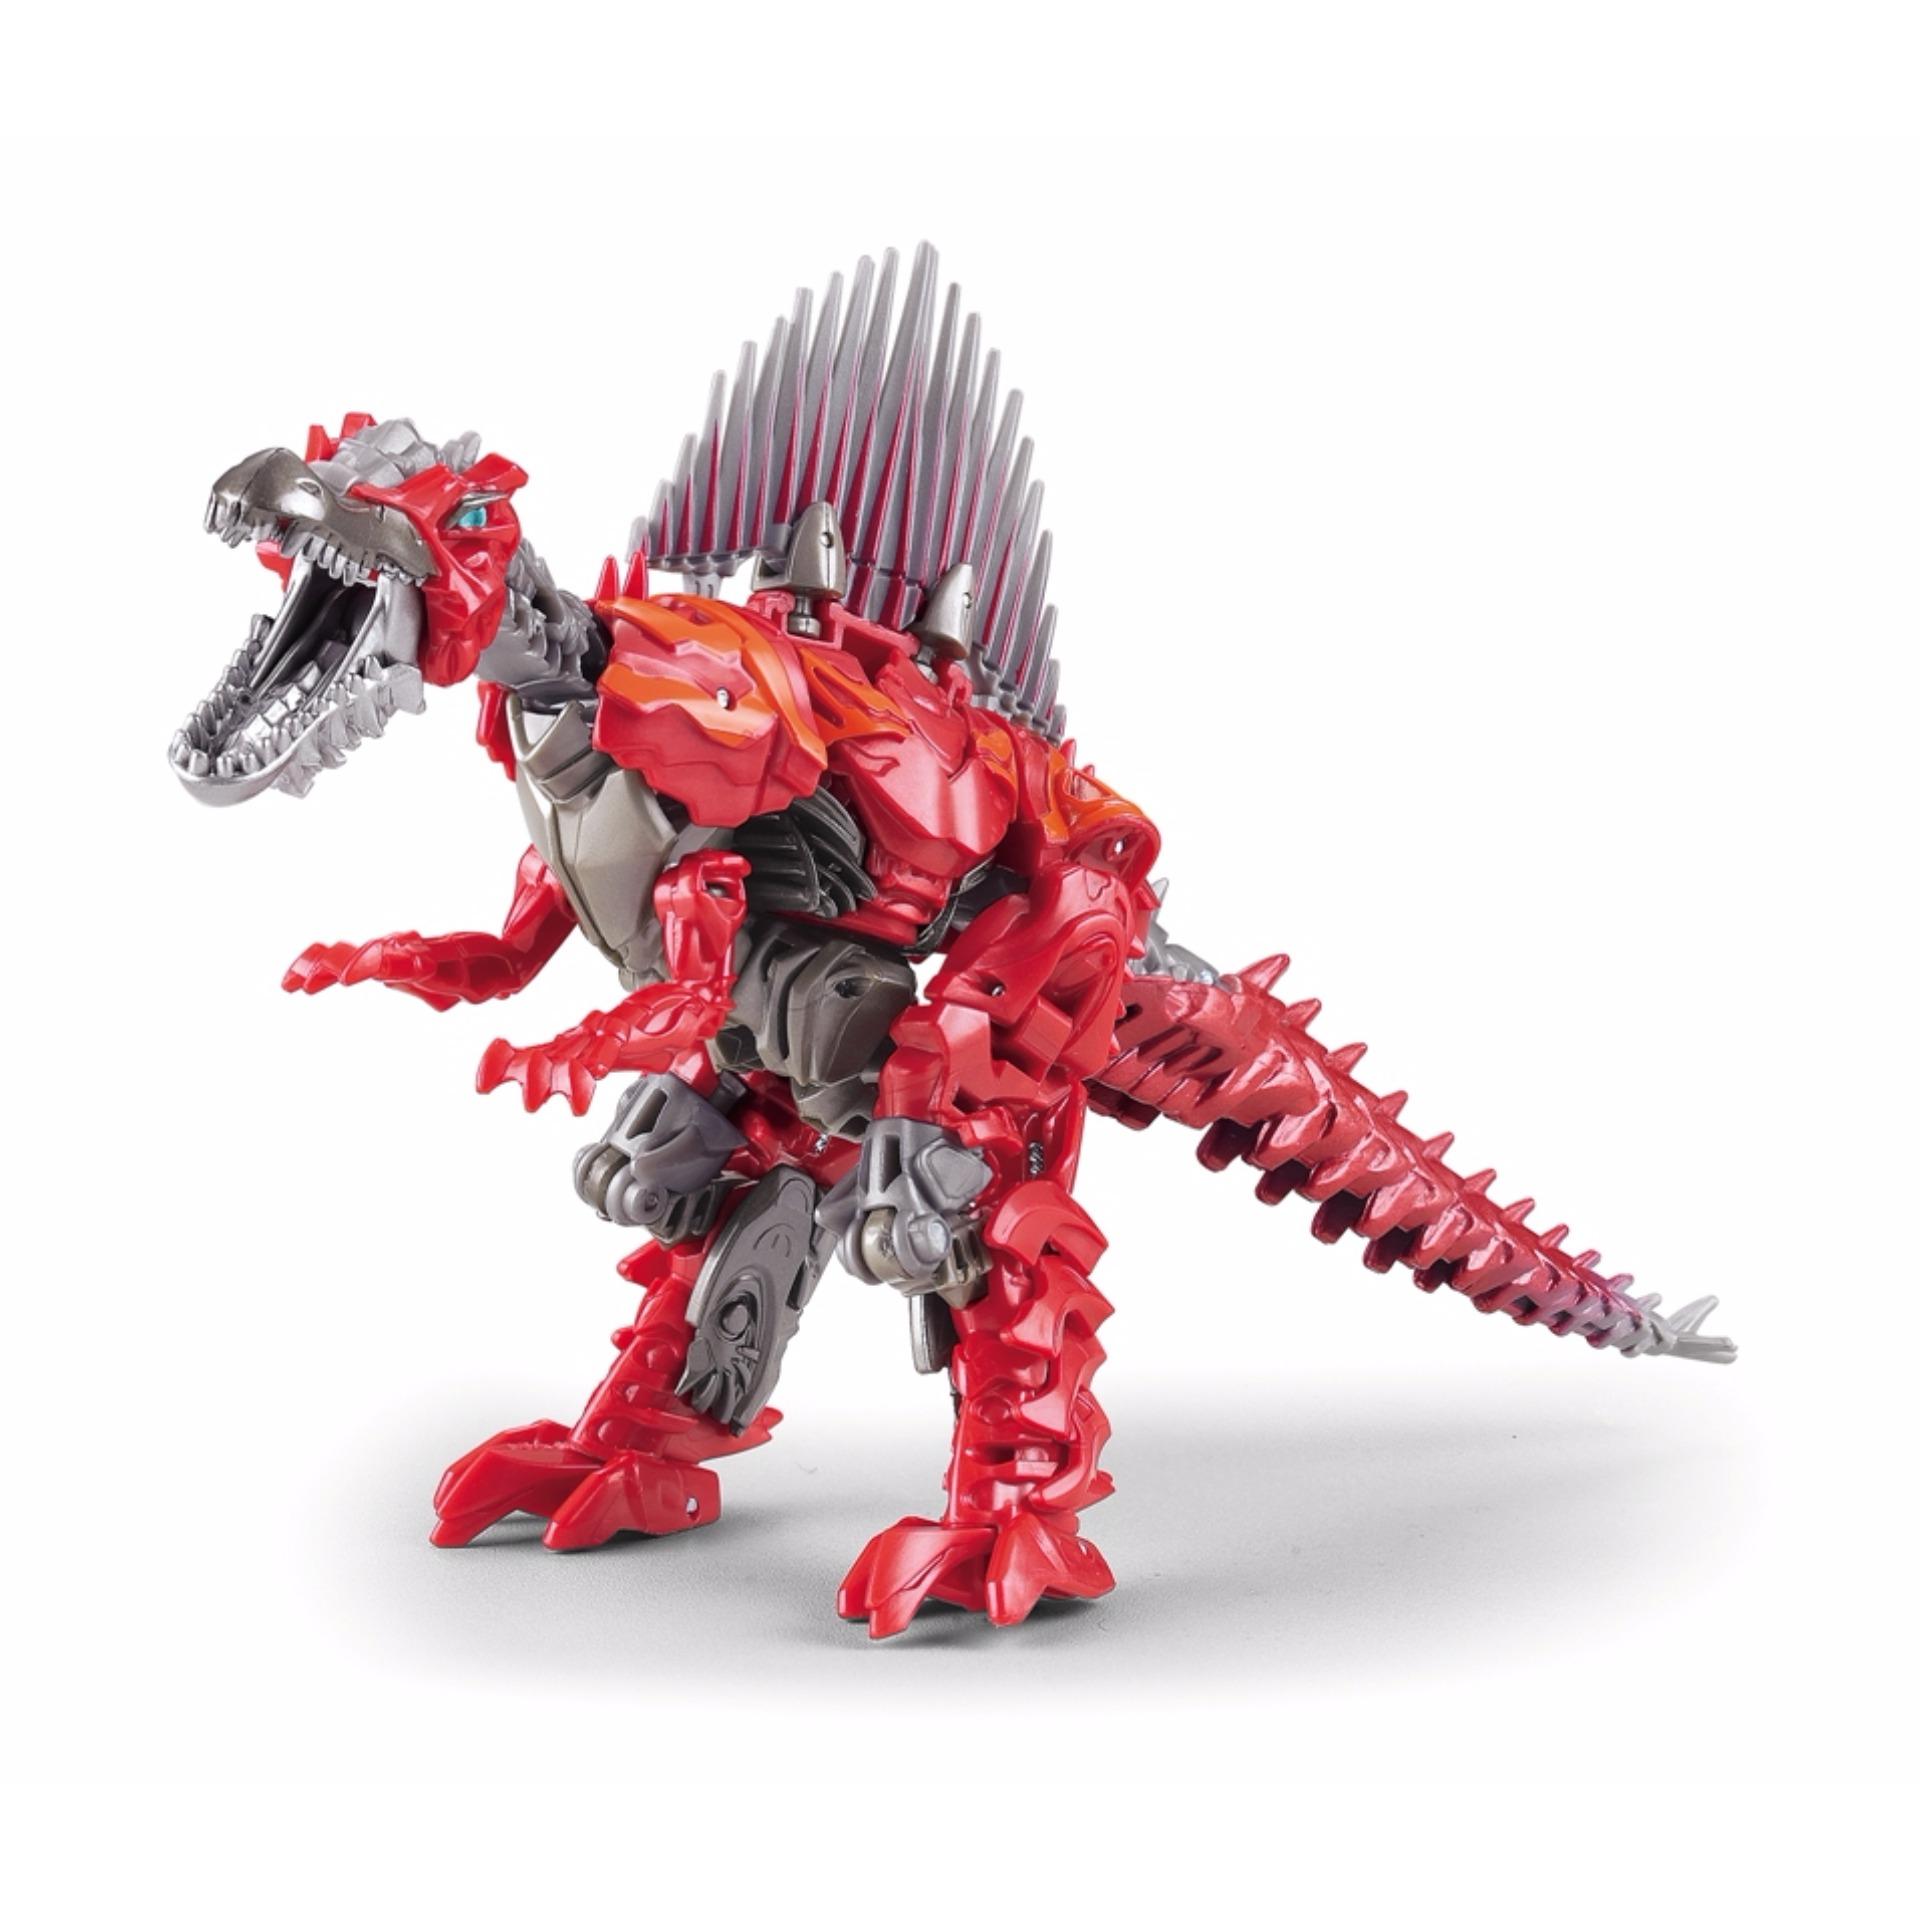 Robot biến hình khủng long bạo chúa Transformer Dinosaur J8010 (cao 19 cm)